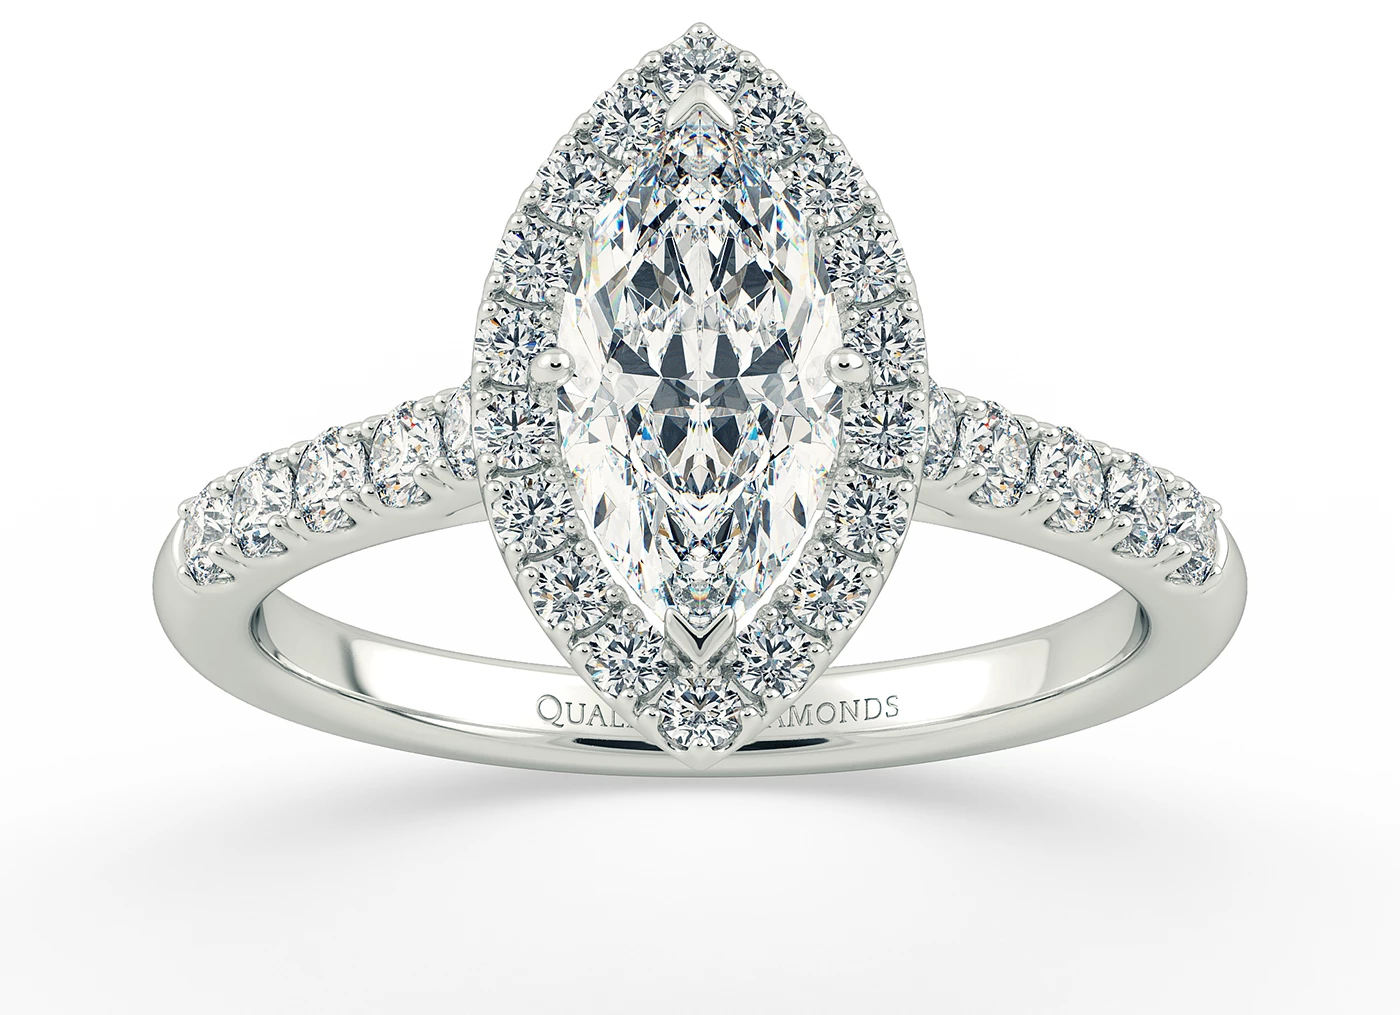 One Carat Marquise Halo Diamond Ring in Platinum 950